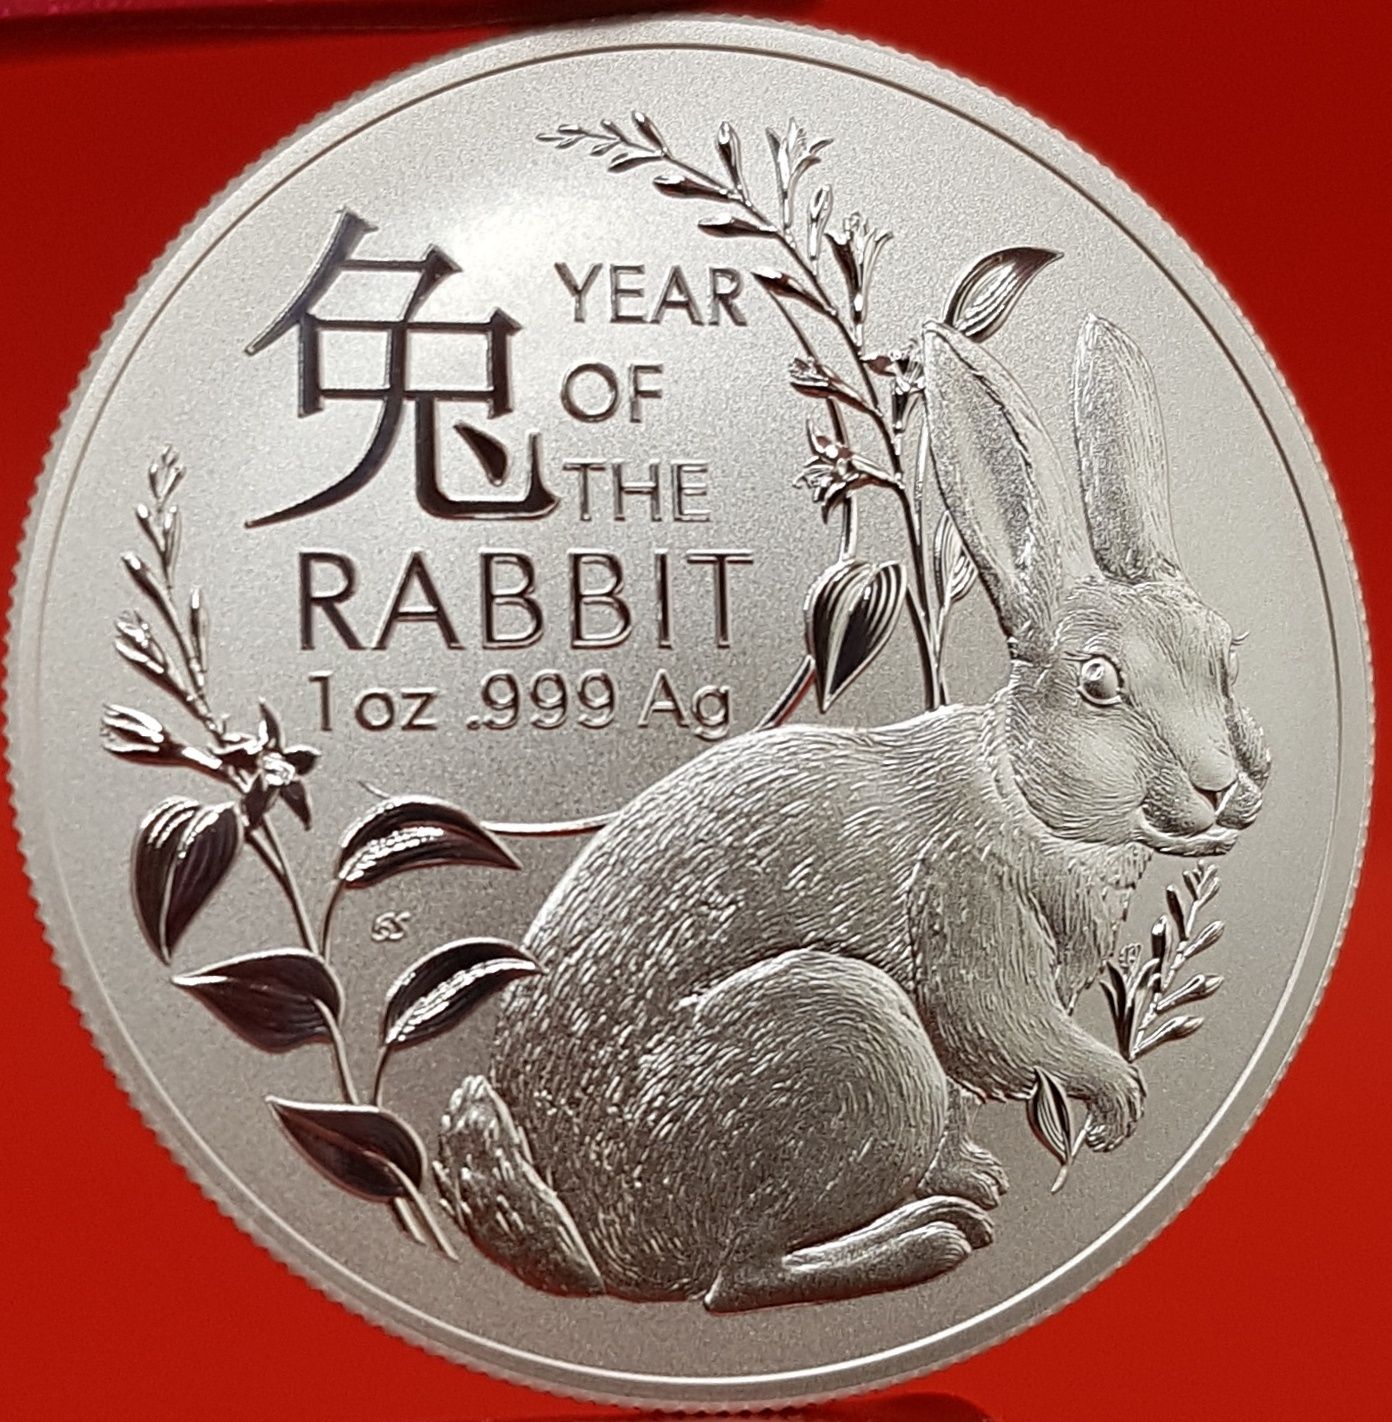 Australia RAM Lunar Toata monede lingou argint 999